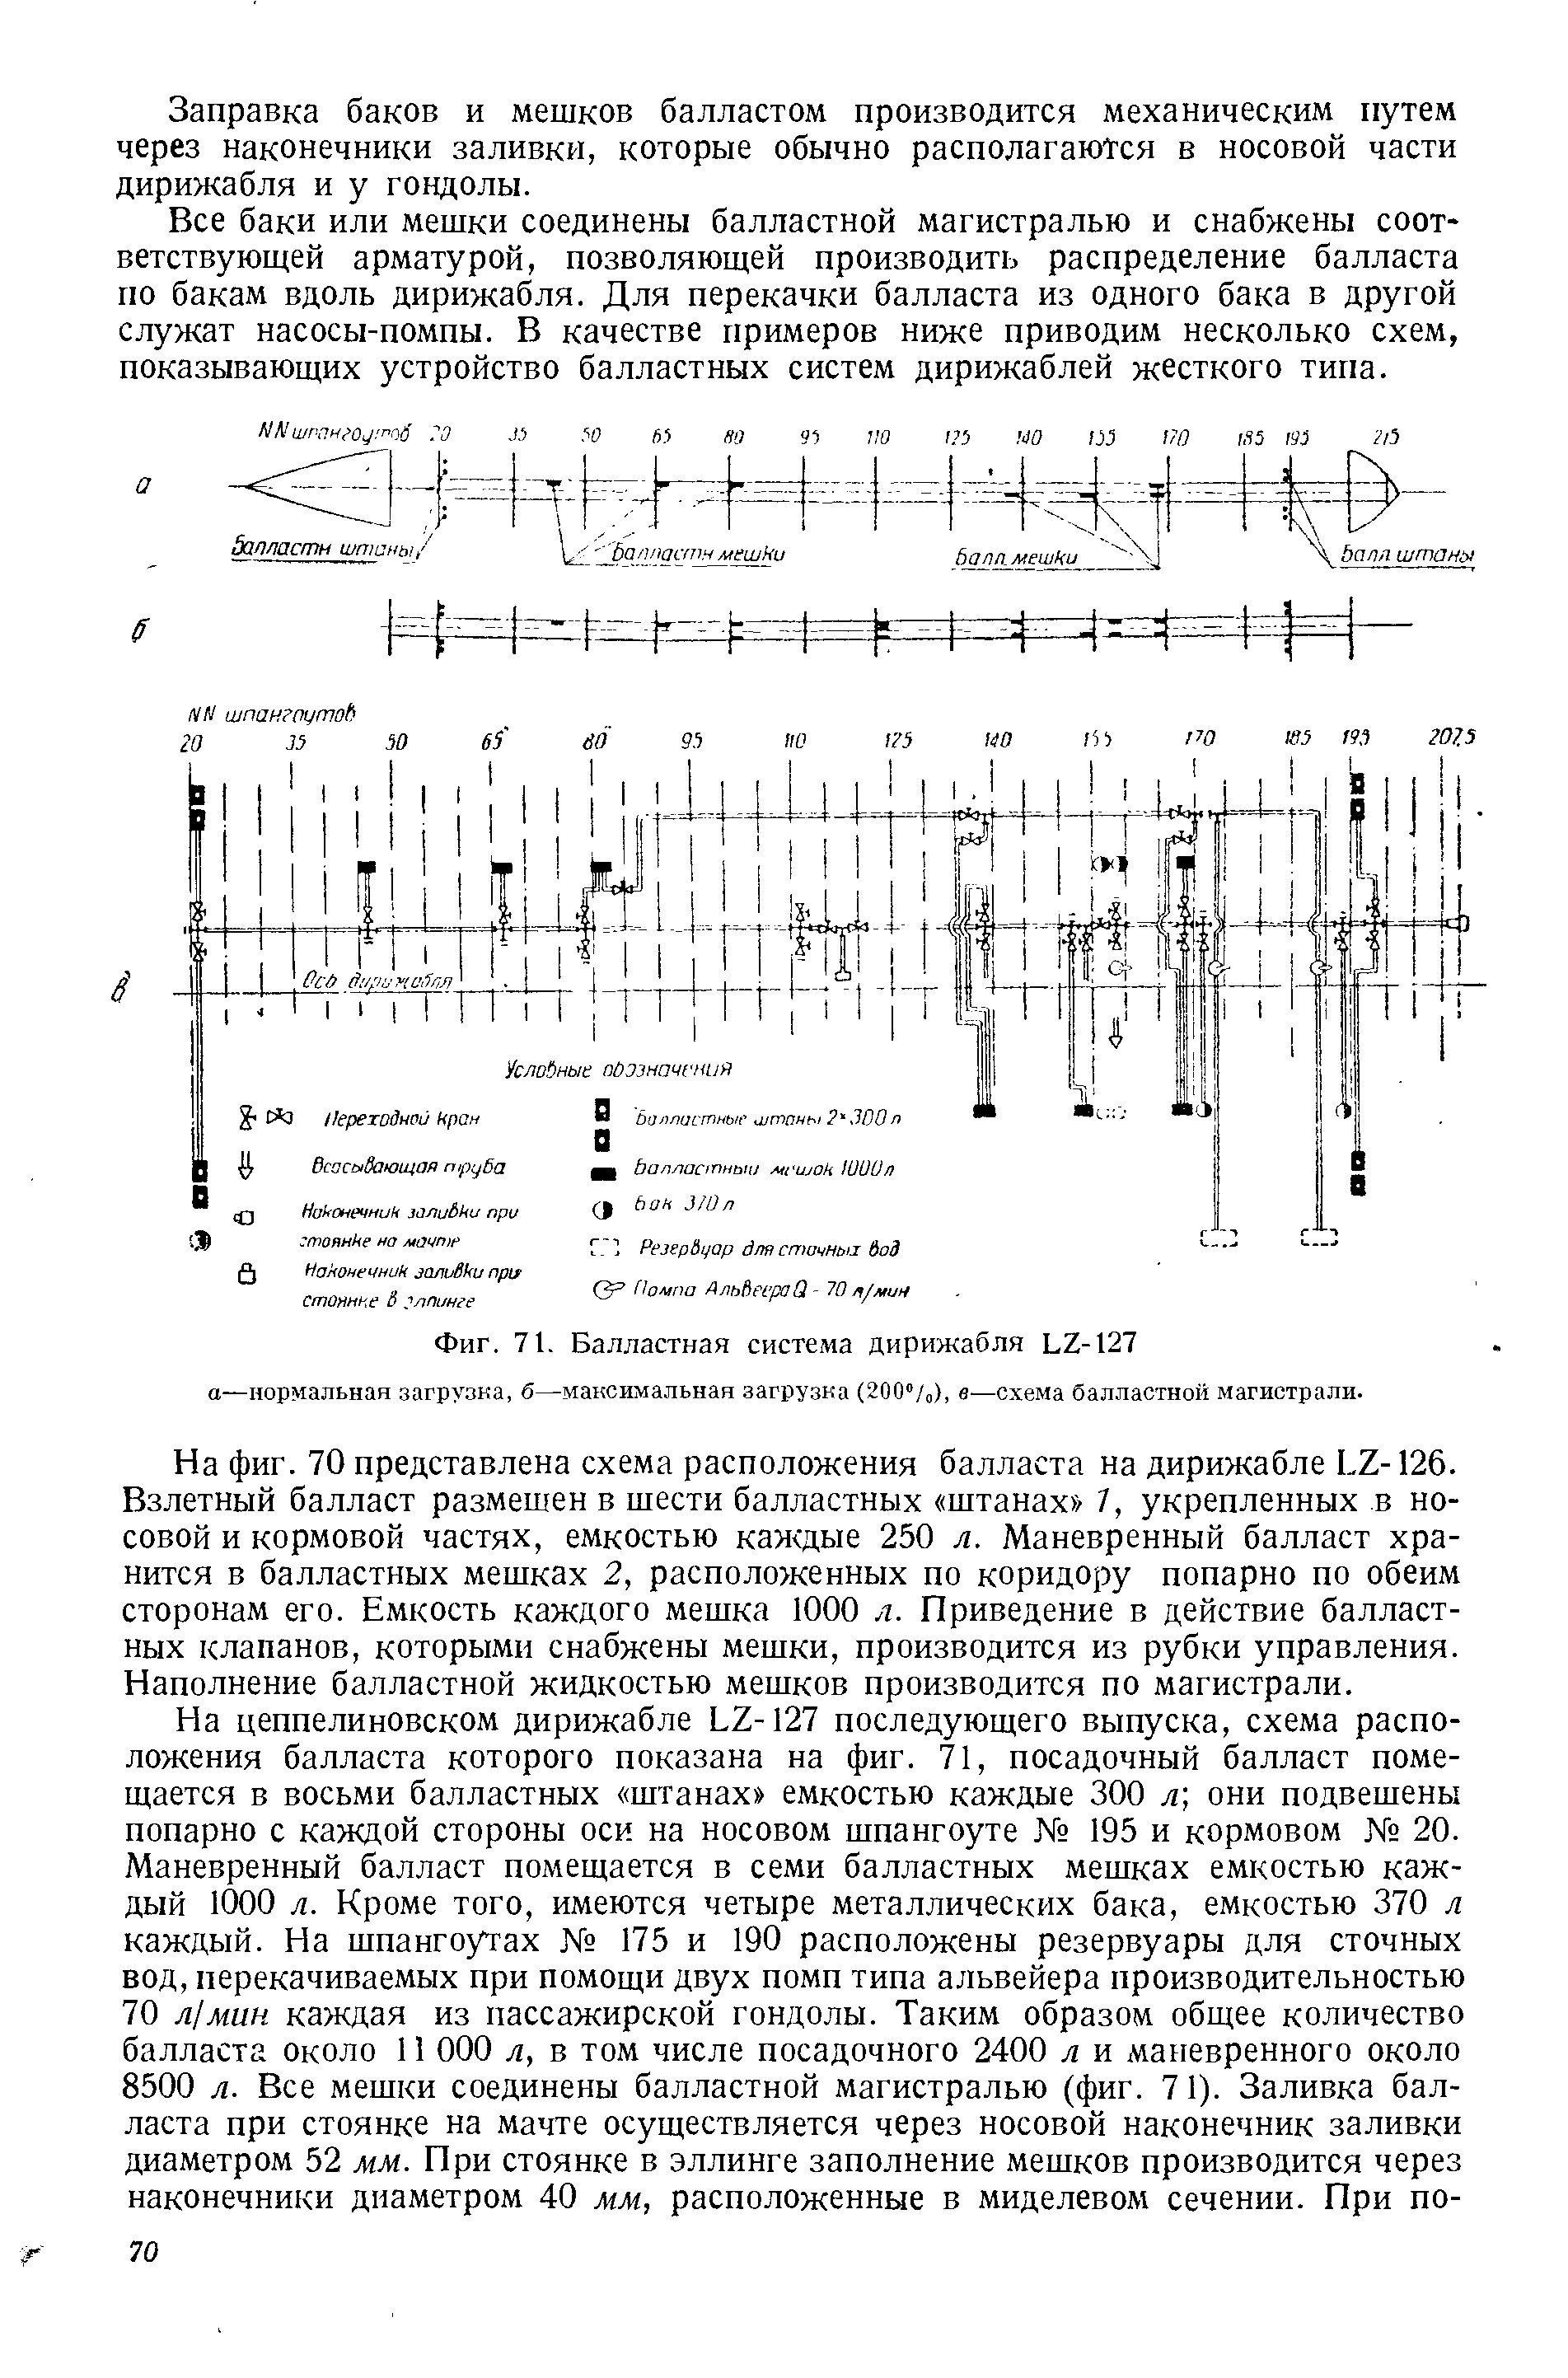 Фиг. 71. <a href="/info/755599">Балластная система</a> дирижабля Ь2-127 а—нормальная загрузка, б—максимальная загрузка (200"/ ), в—схема балластной магистрали.
